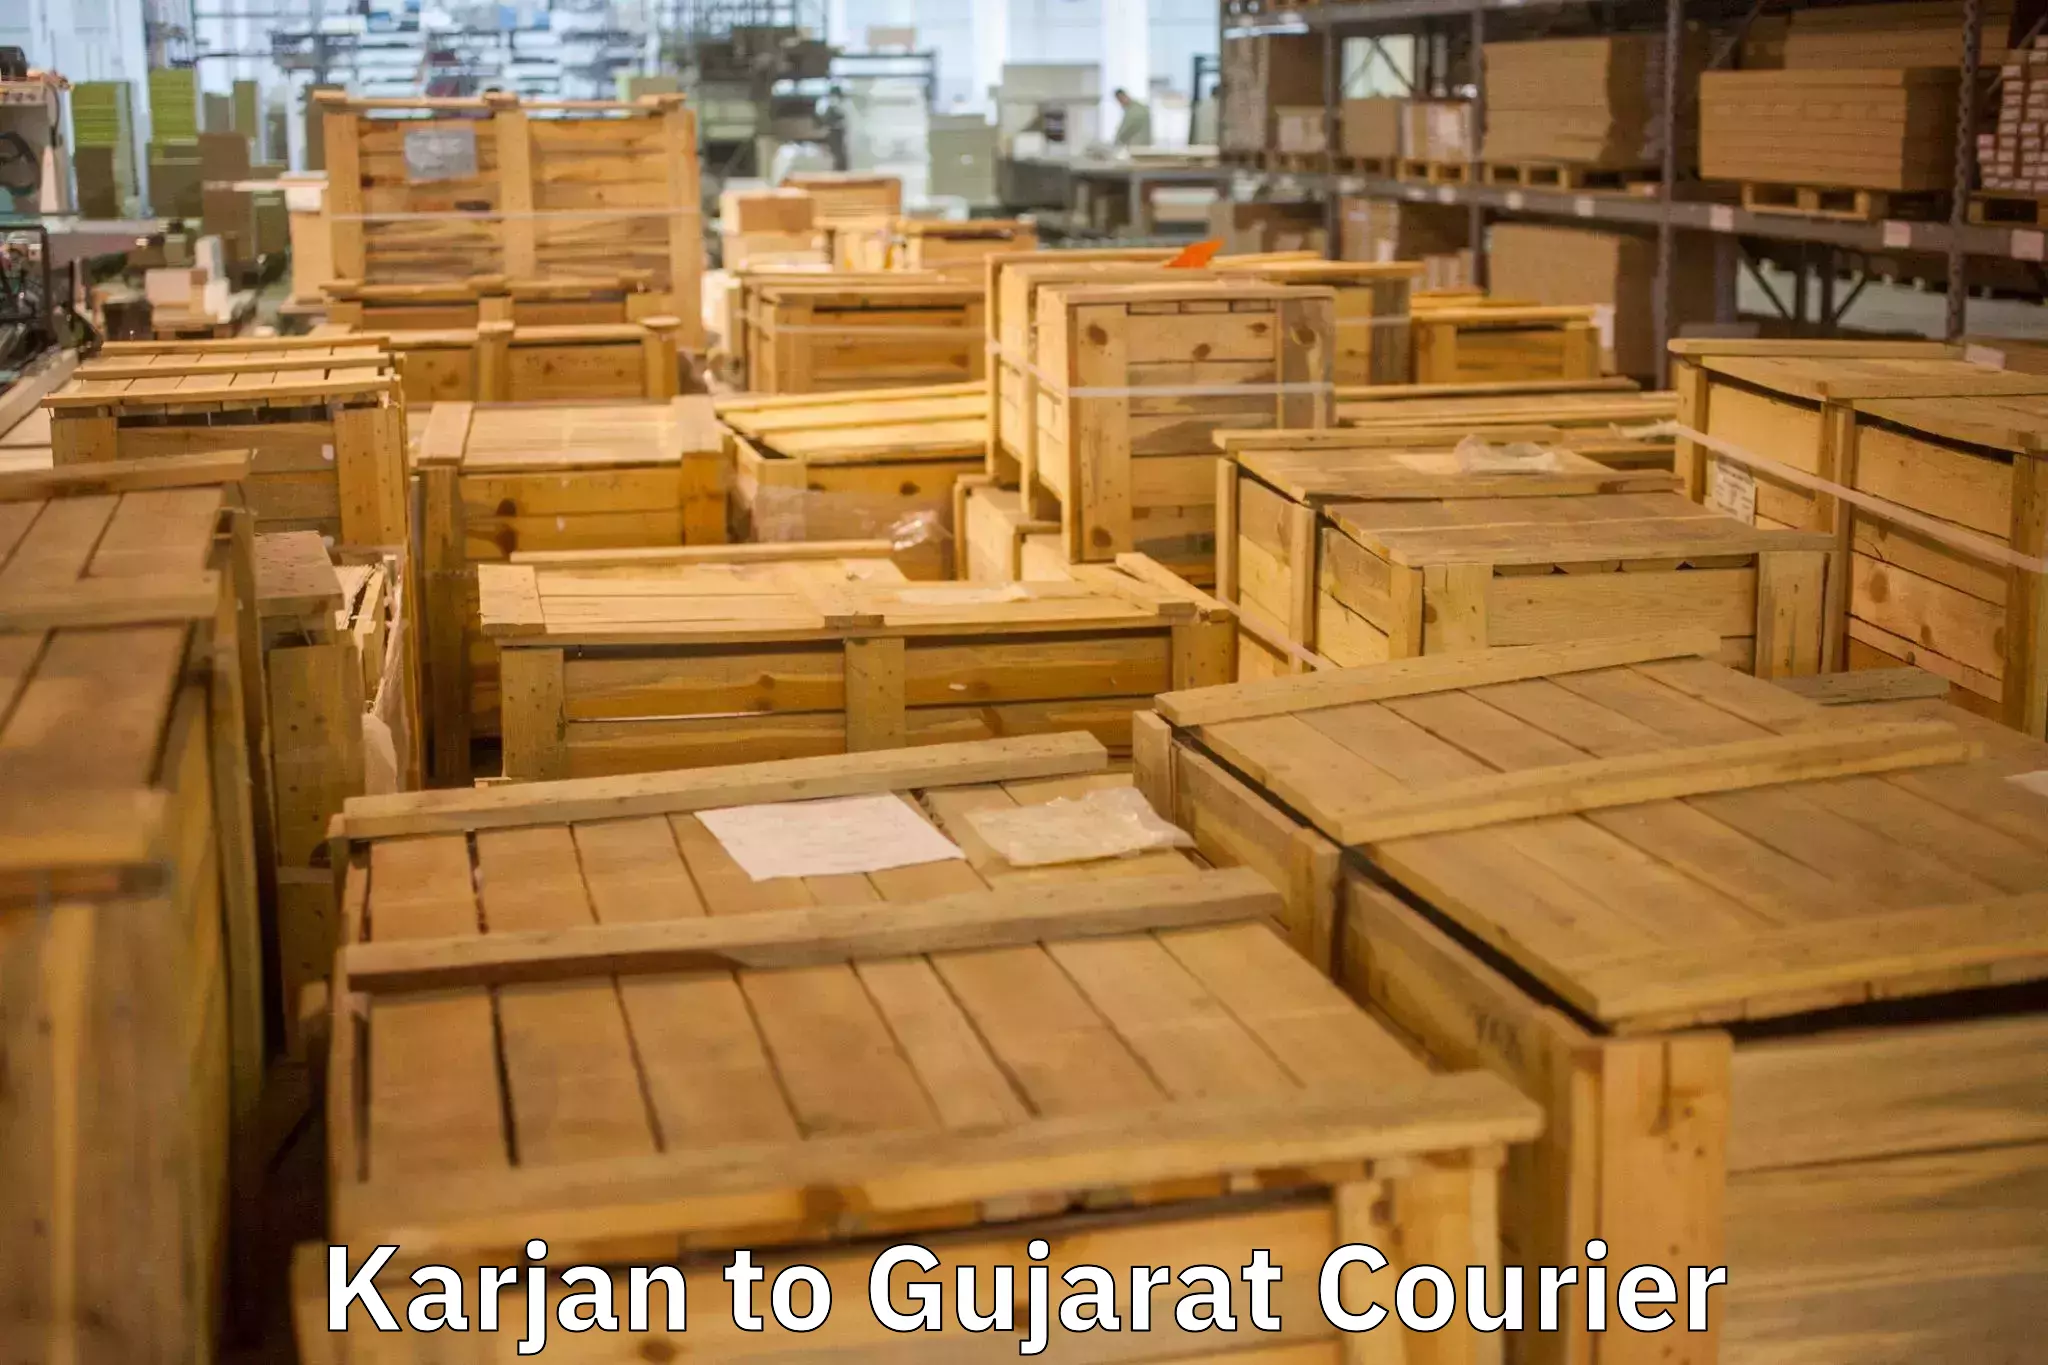 Residential moving experts Karjan to Dhoraji